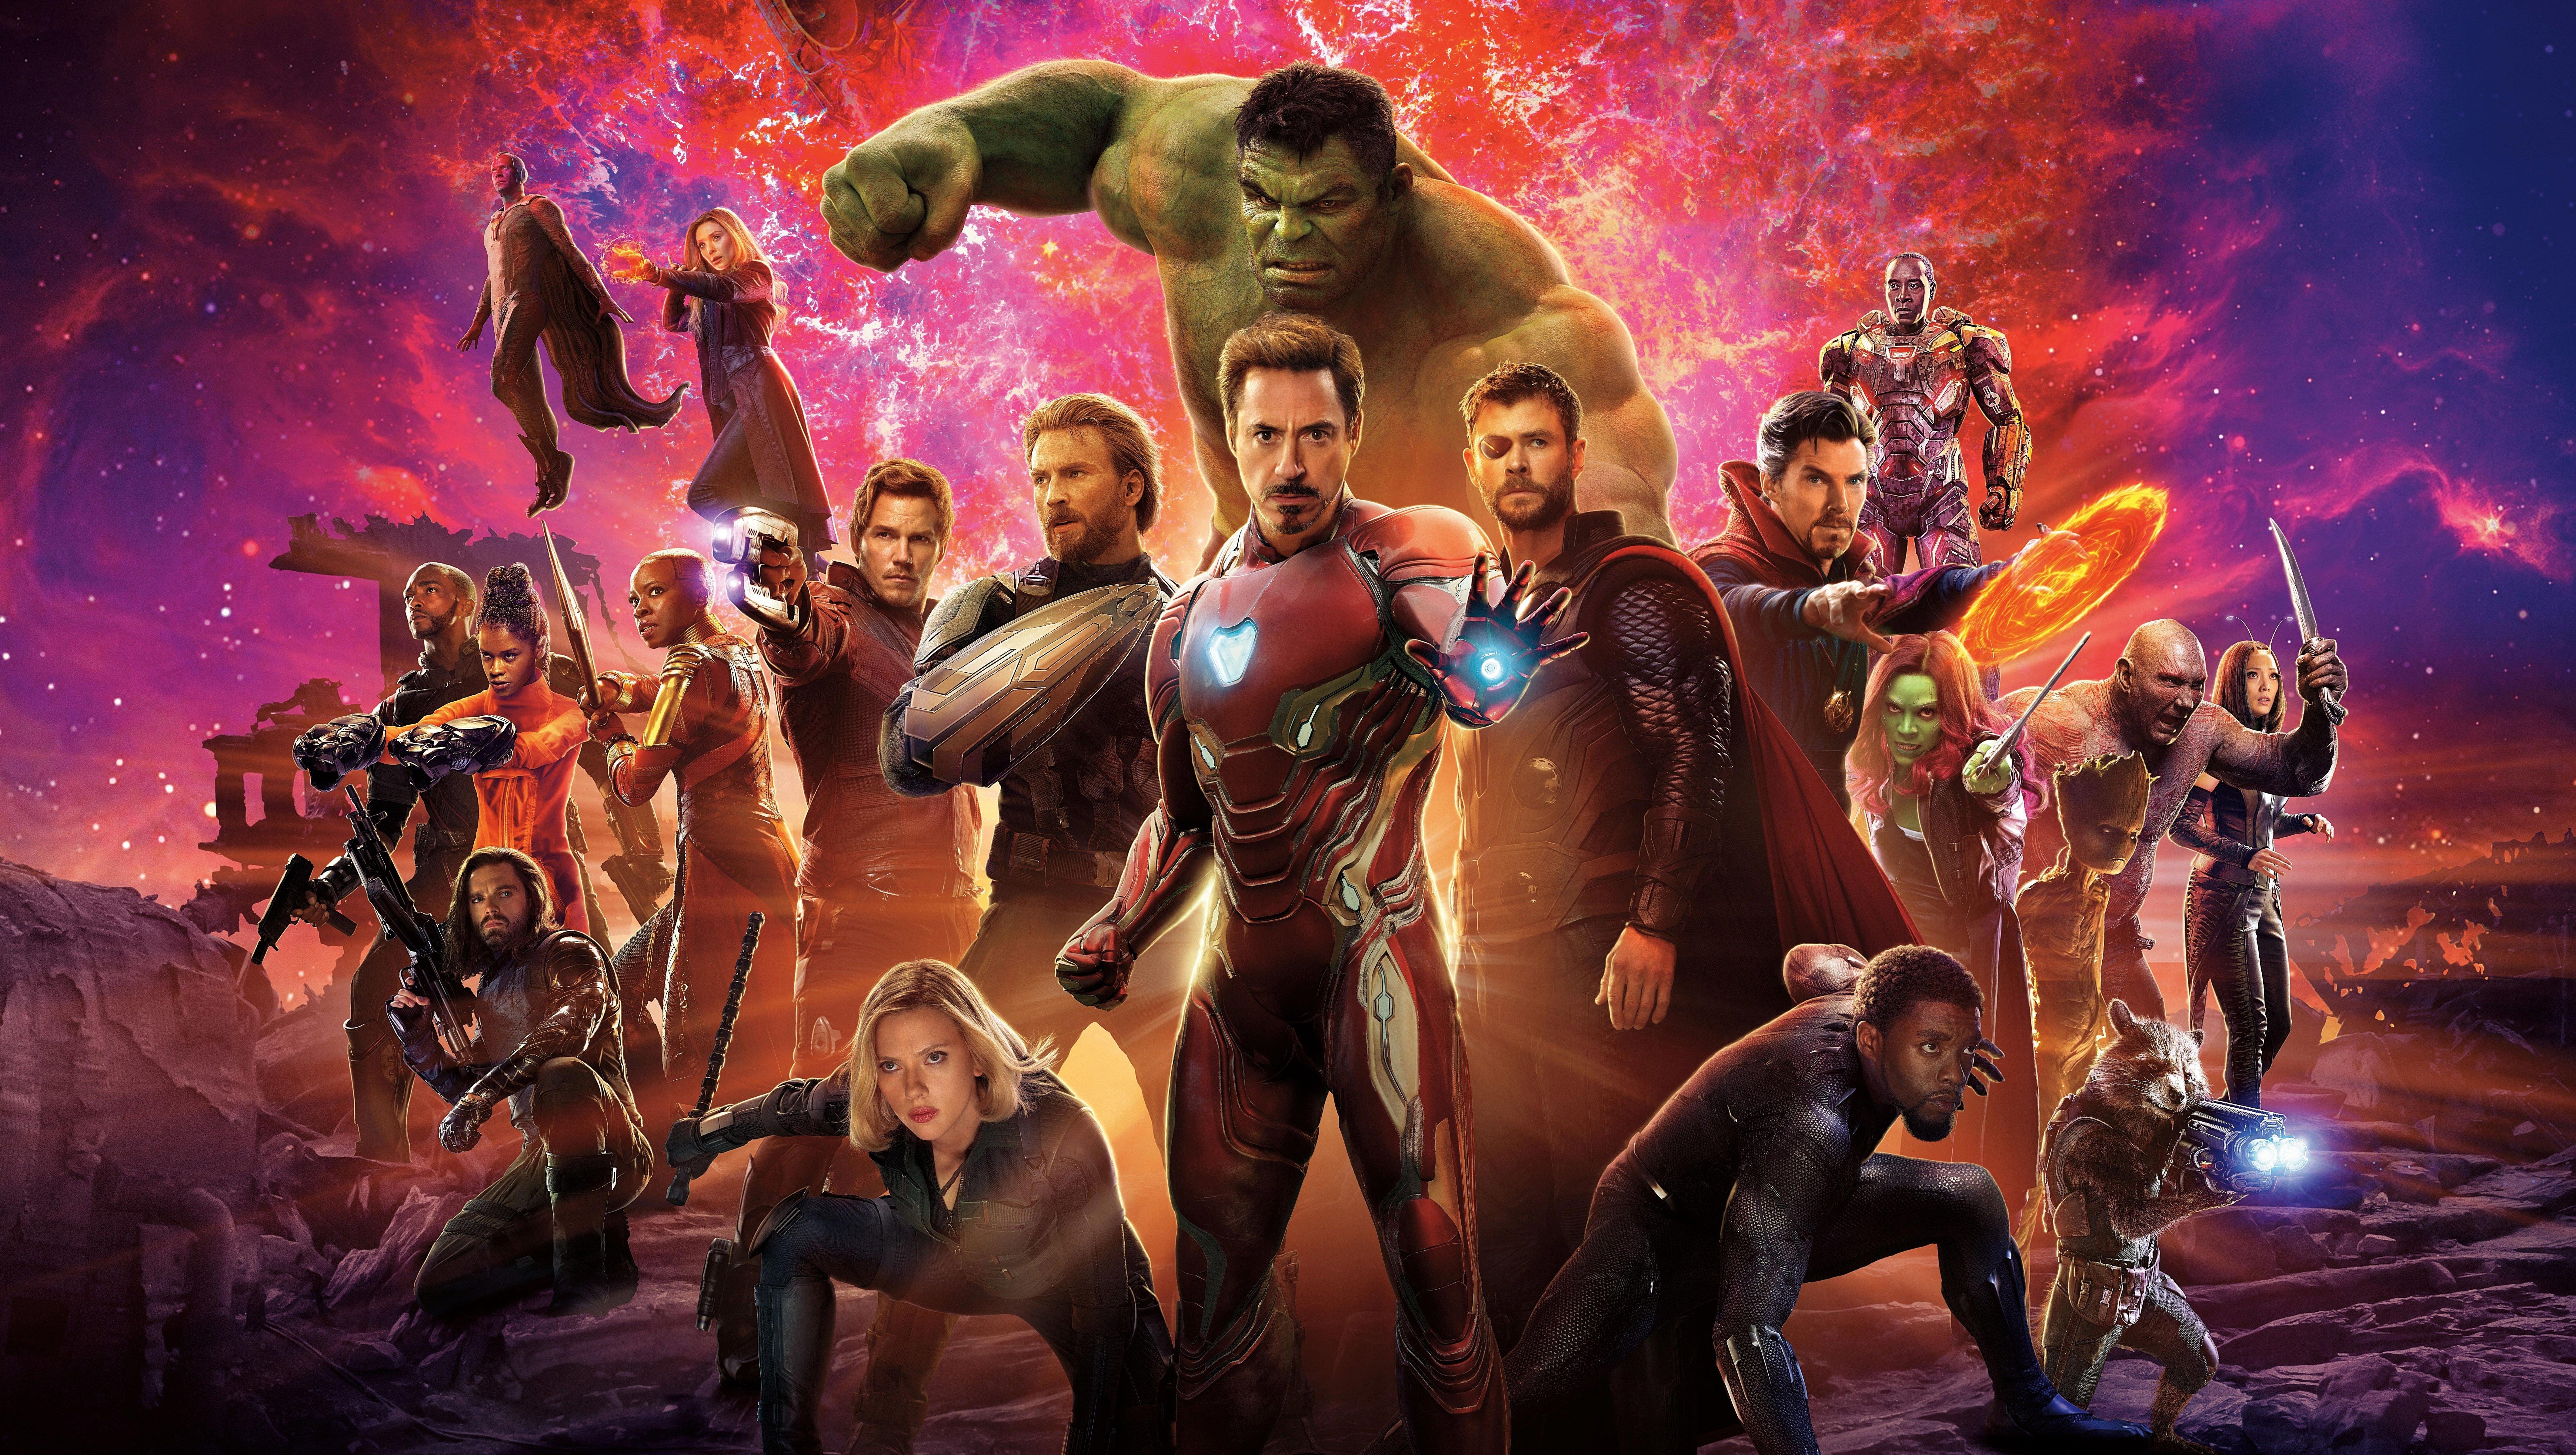 8500 x 4800 · jpeg - Avengers: Infinity War (2018) 8K ULTRA HD Wallpaper